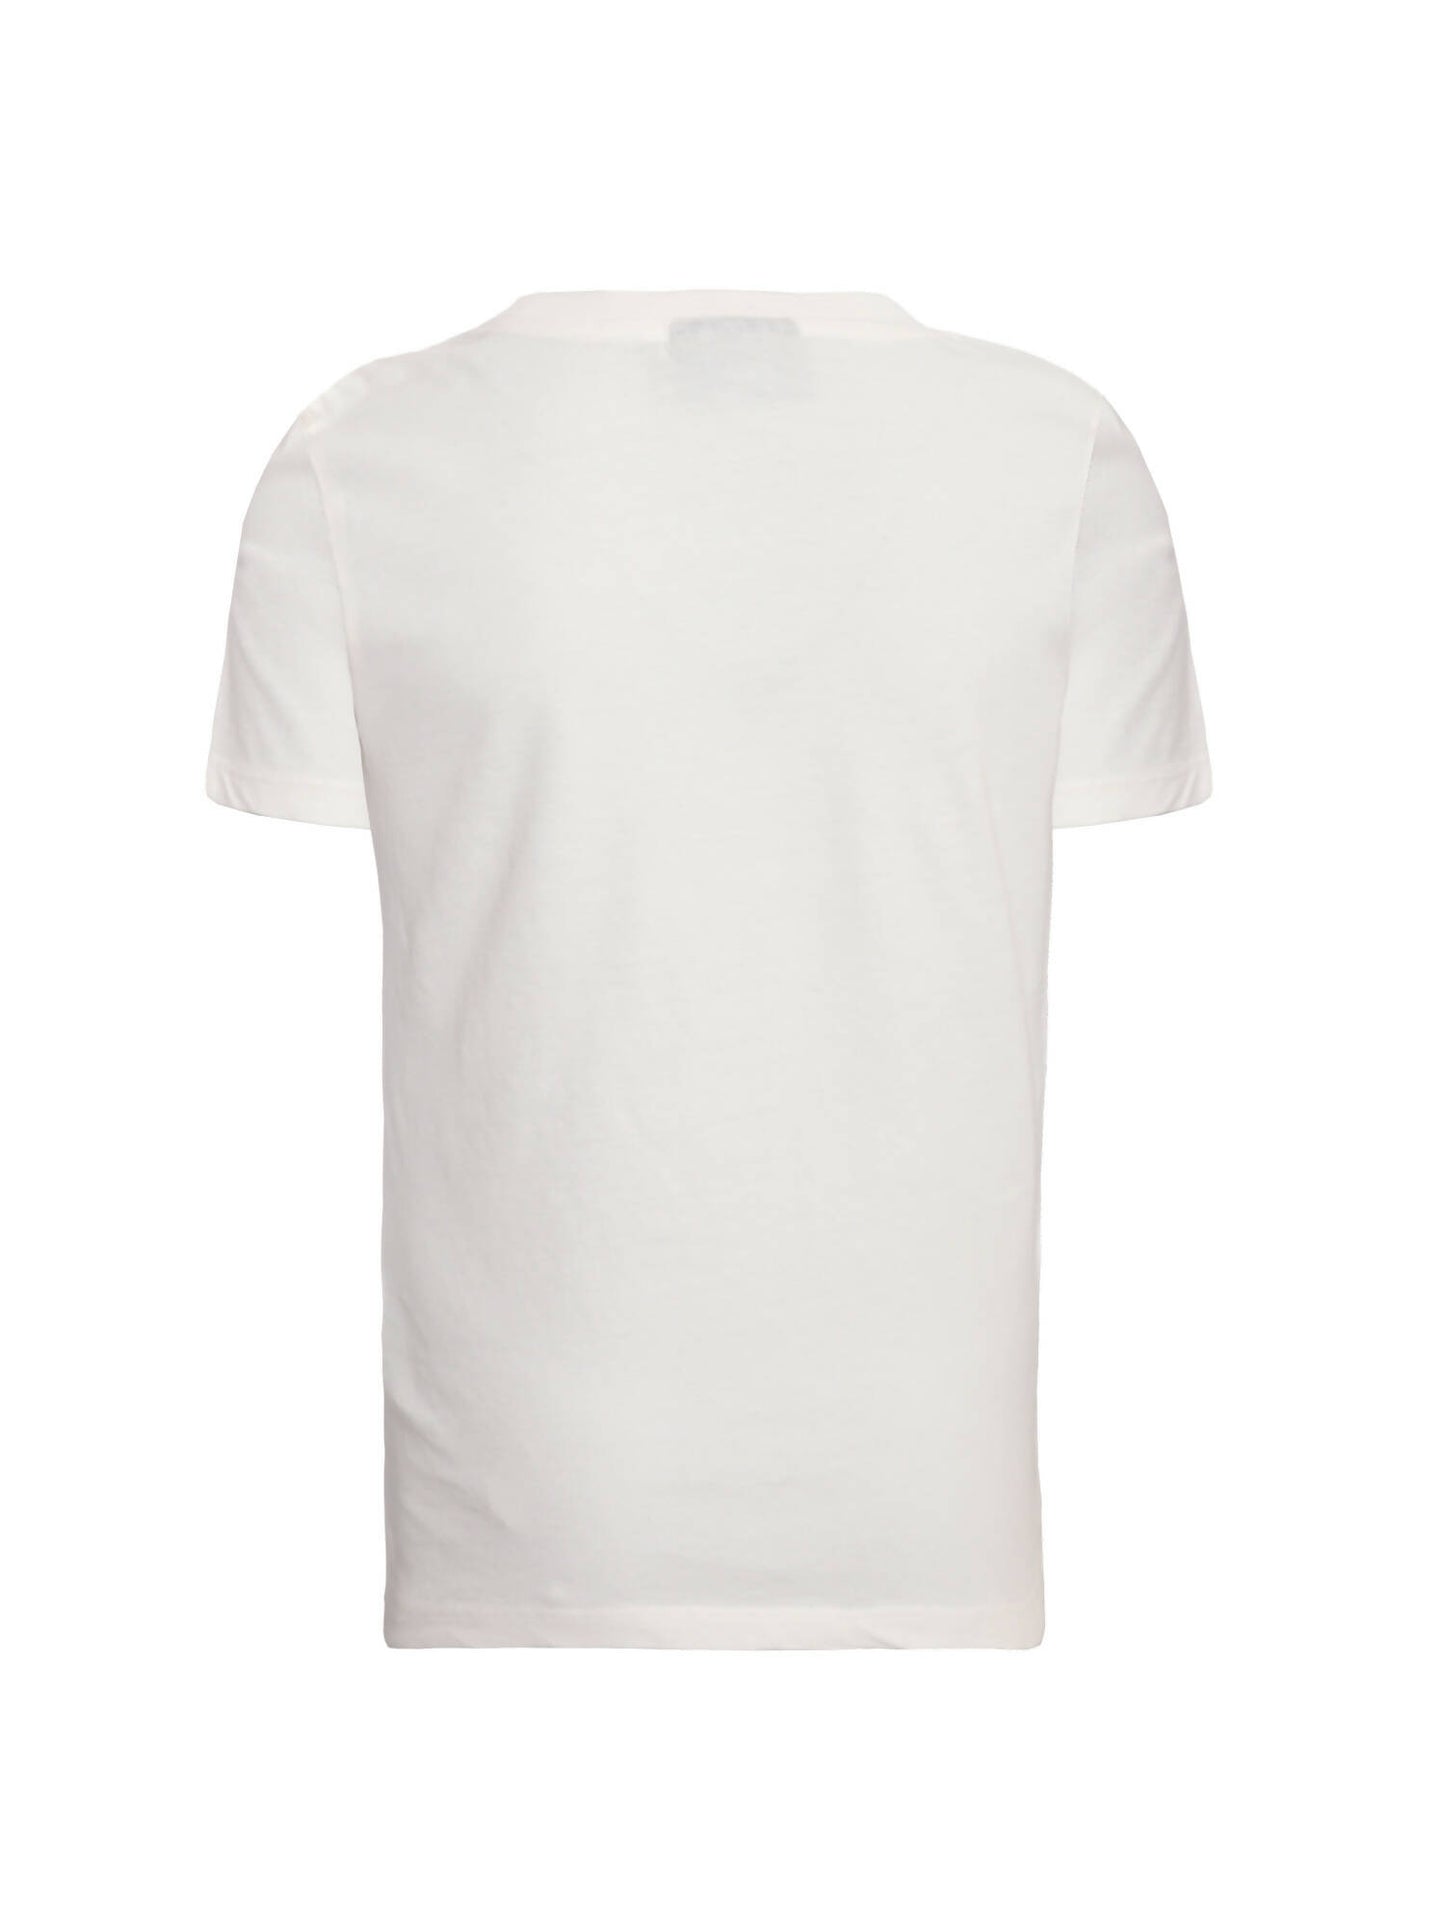 Bedrucktes Kinder-T-Shirt in gebrochenem Weiß